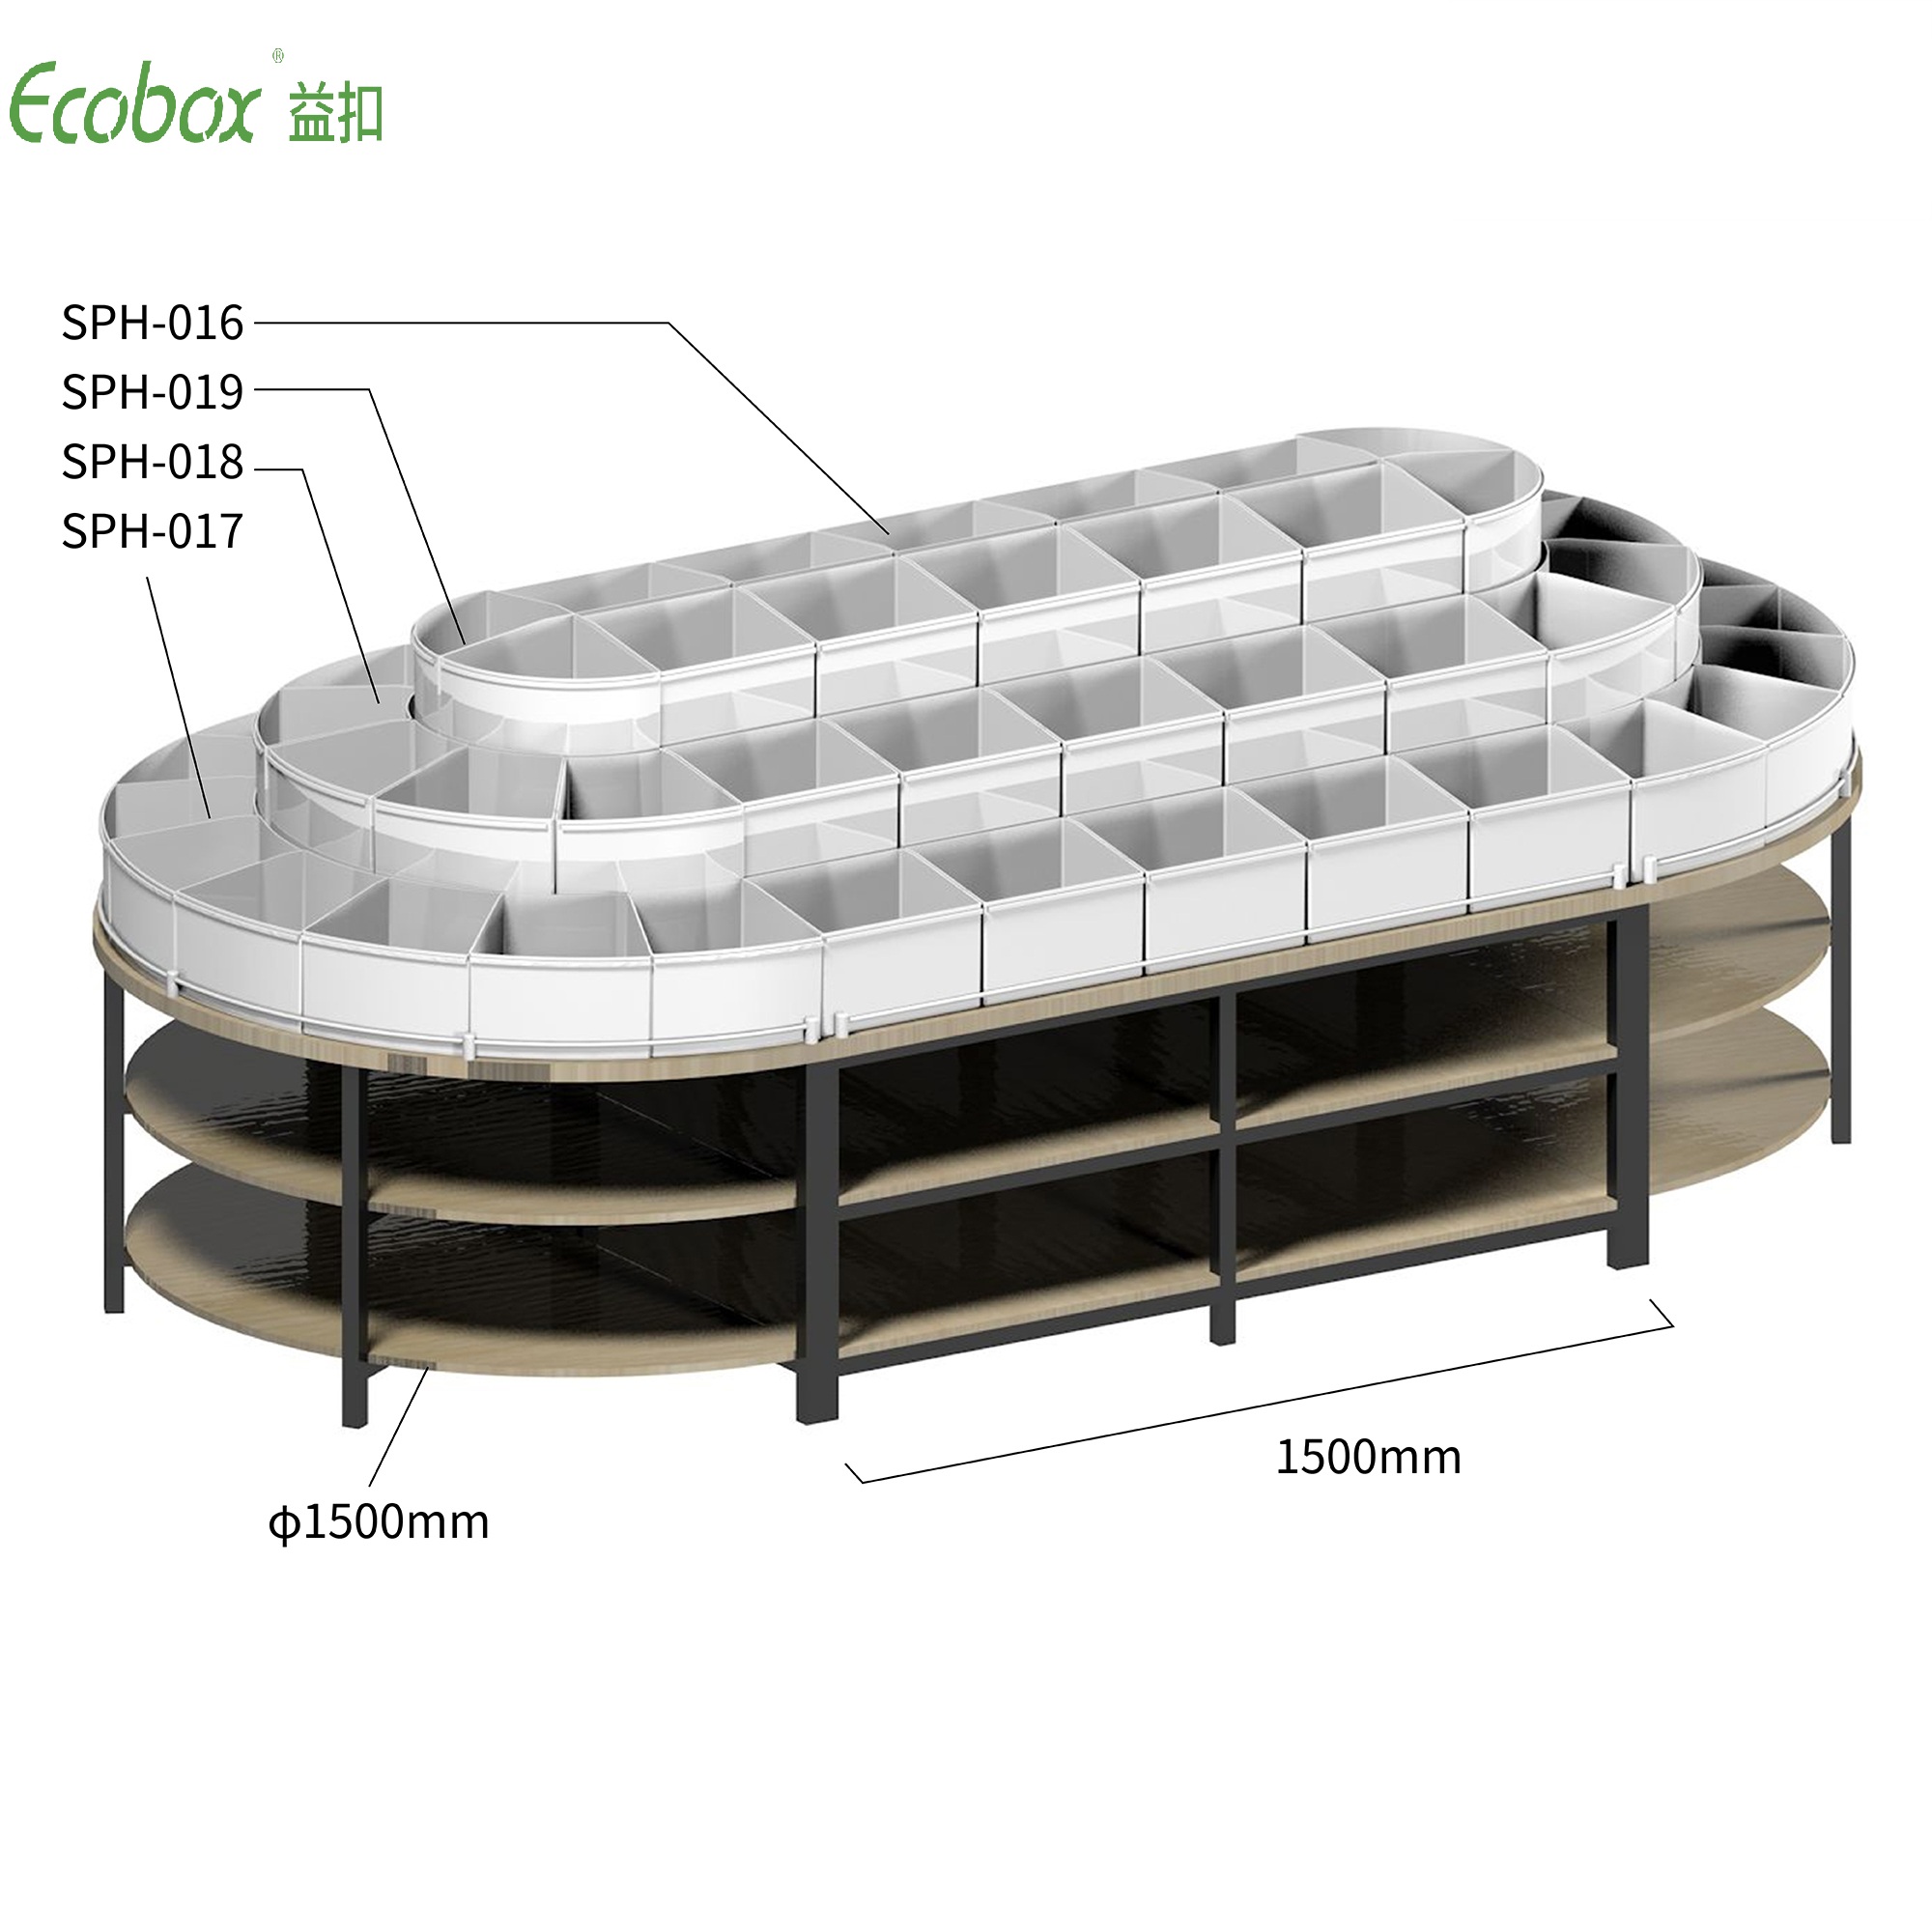 Rundes Regal der Ecobox G005-Serie mit Ecobox-Großbehältern für Supermarkt-Großlebensmitteldisplays